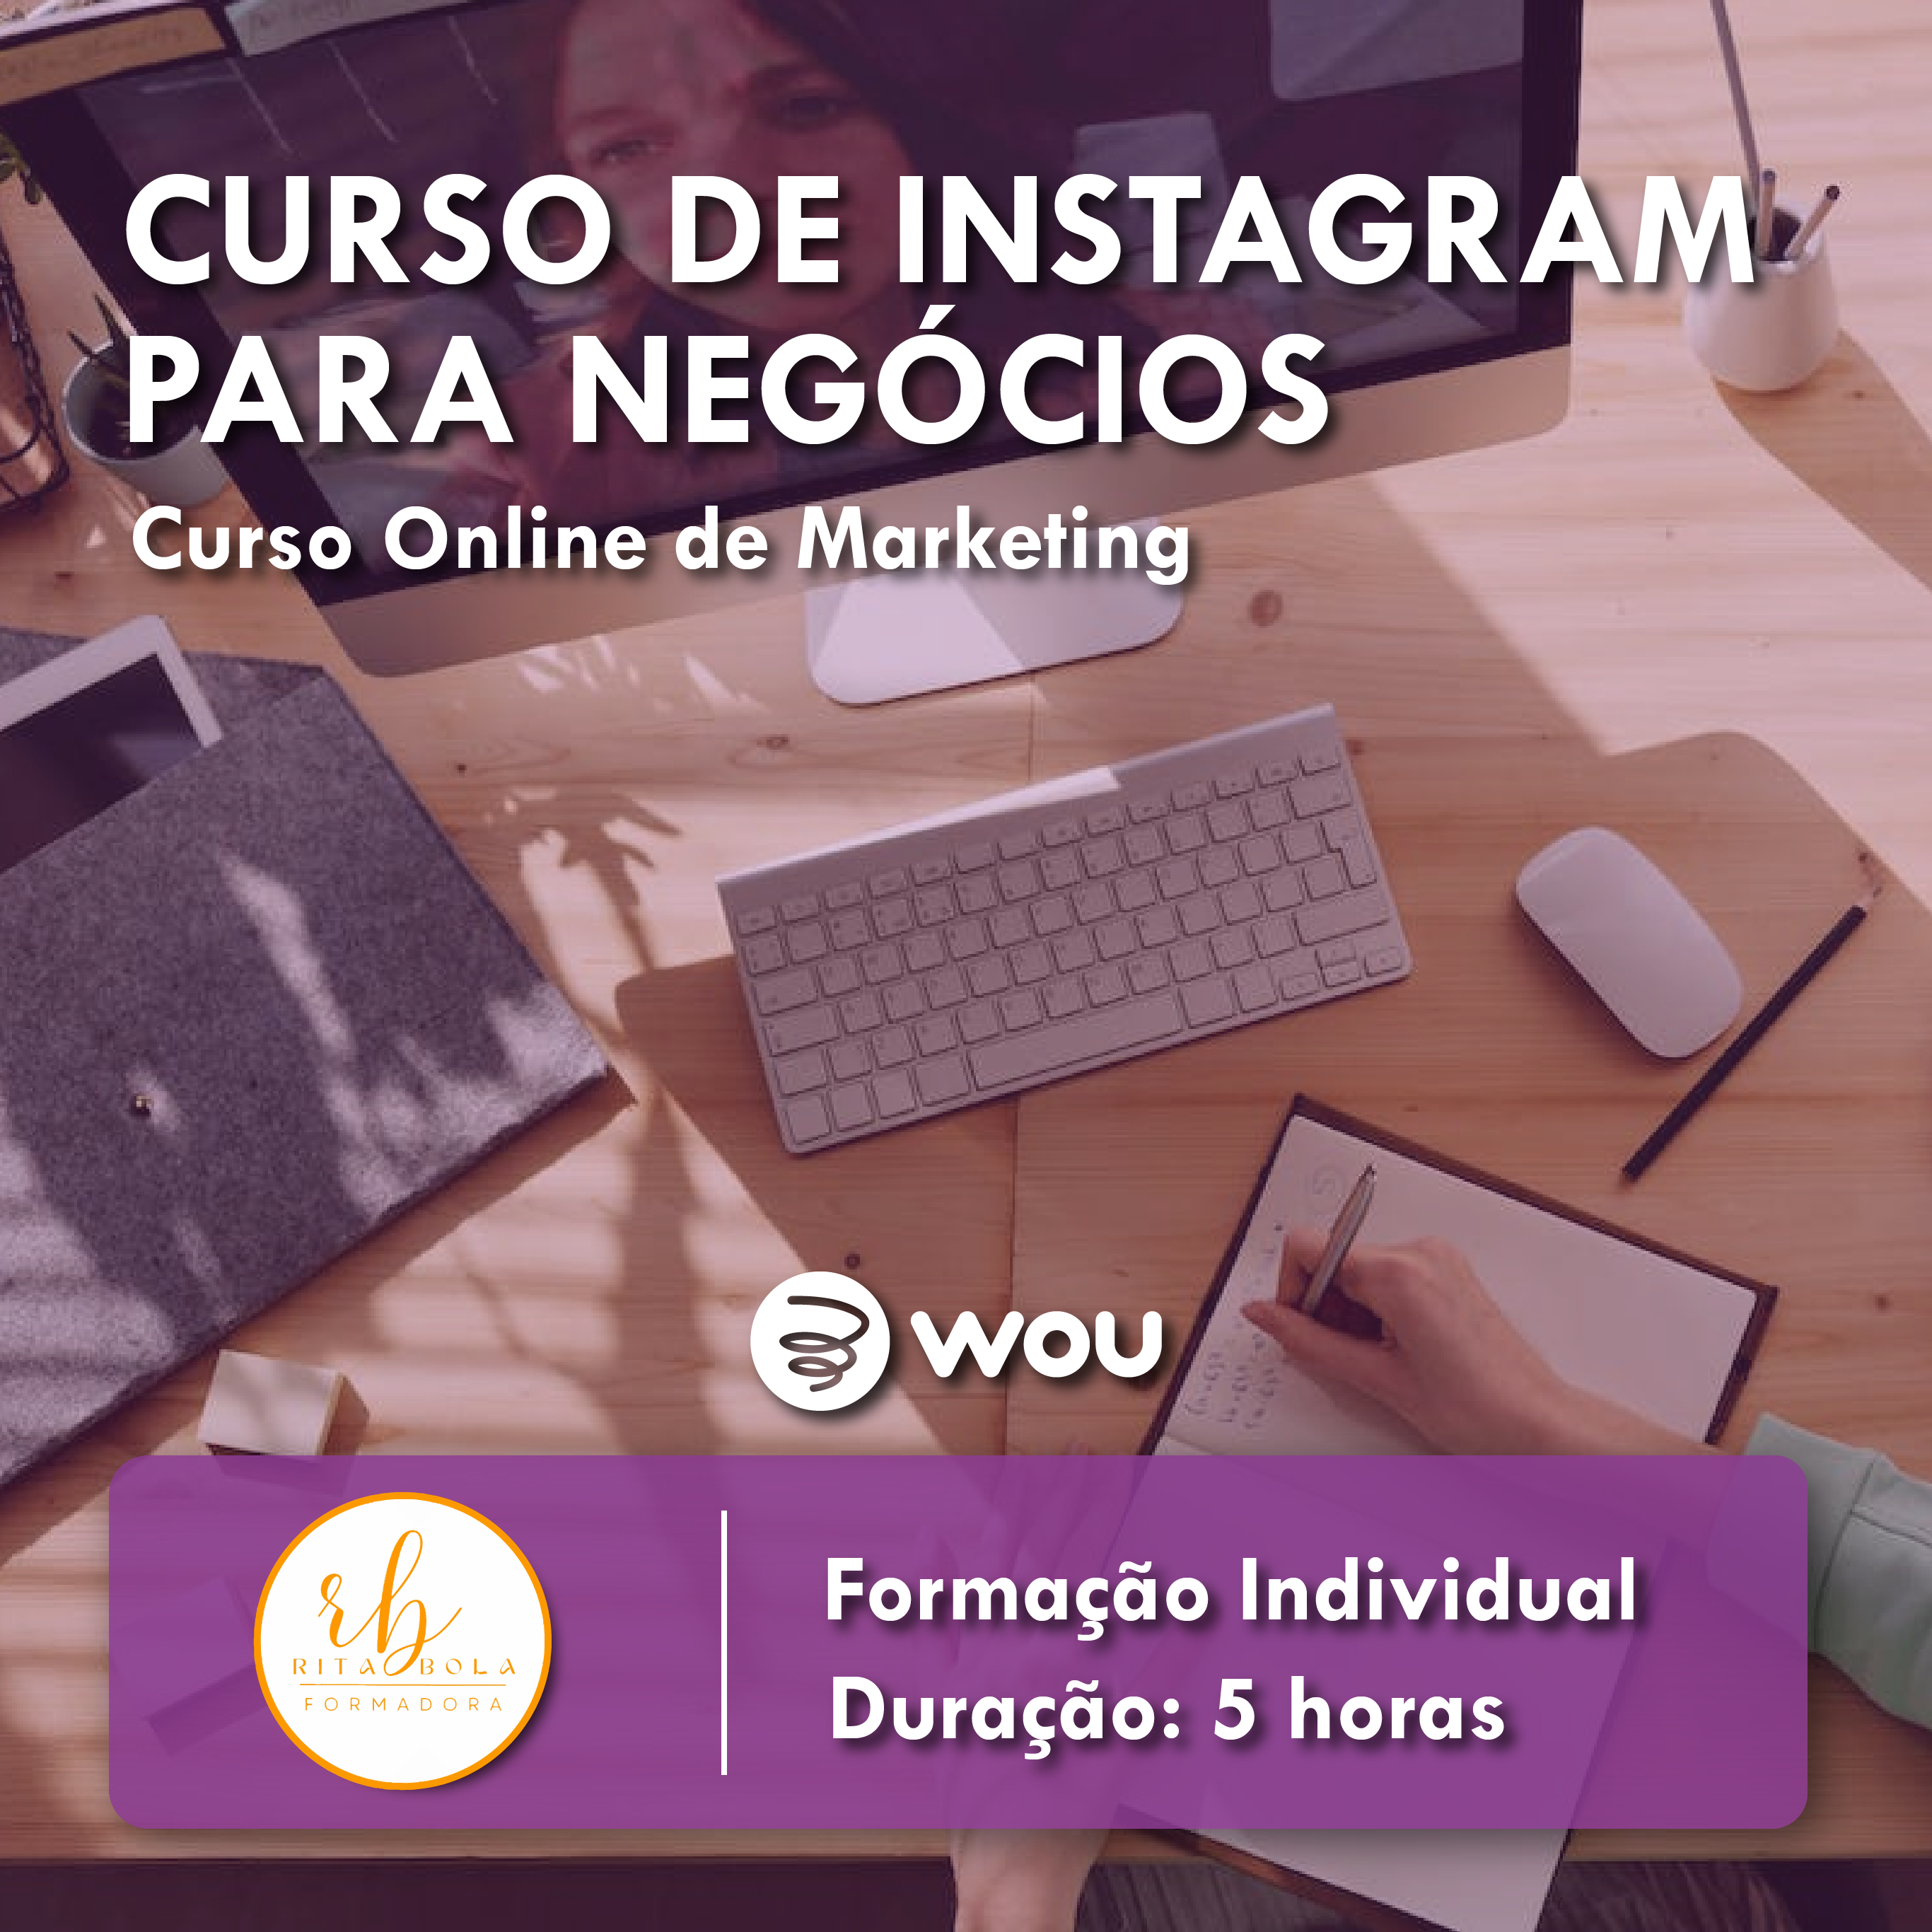 Curso Online de Instagram para Negócios